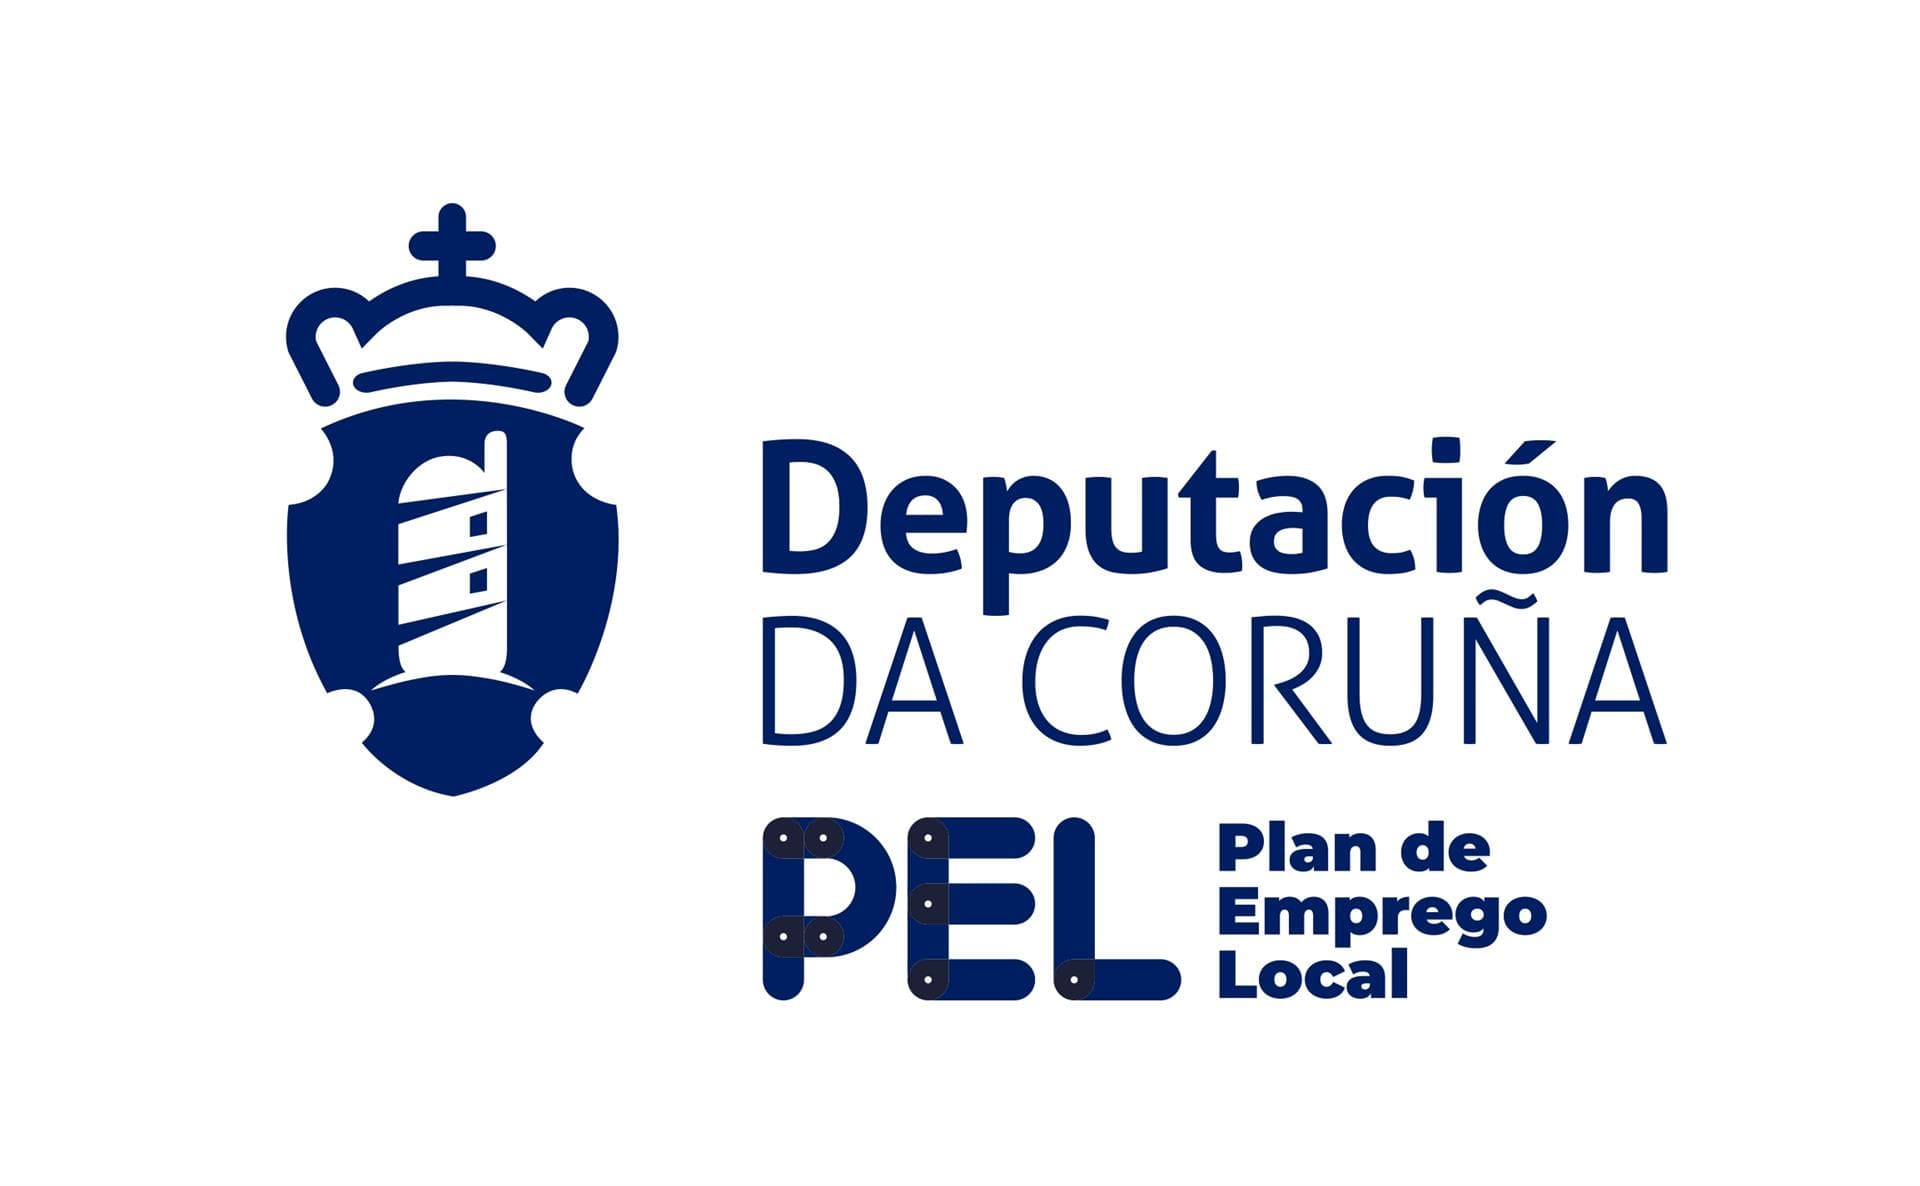 Plan de emprego local - Deputación de A Coruña